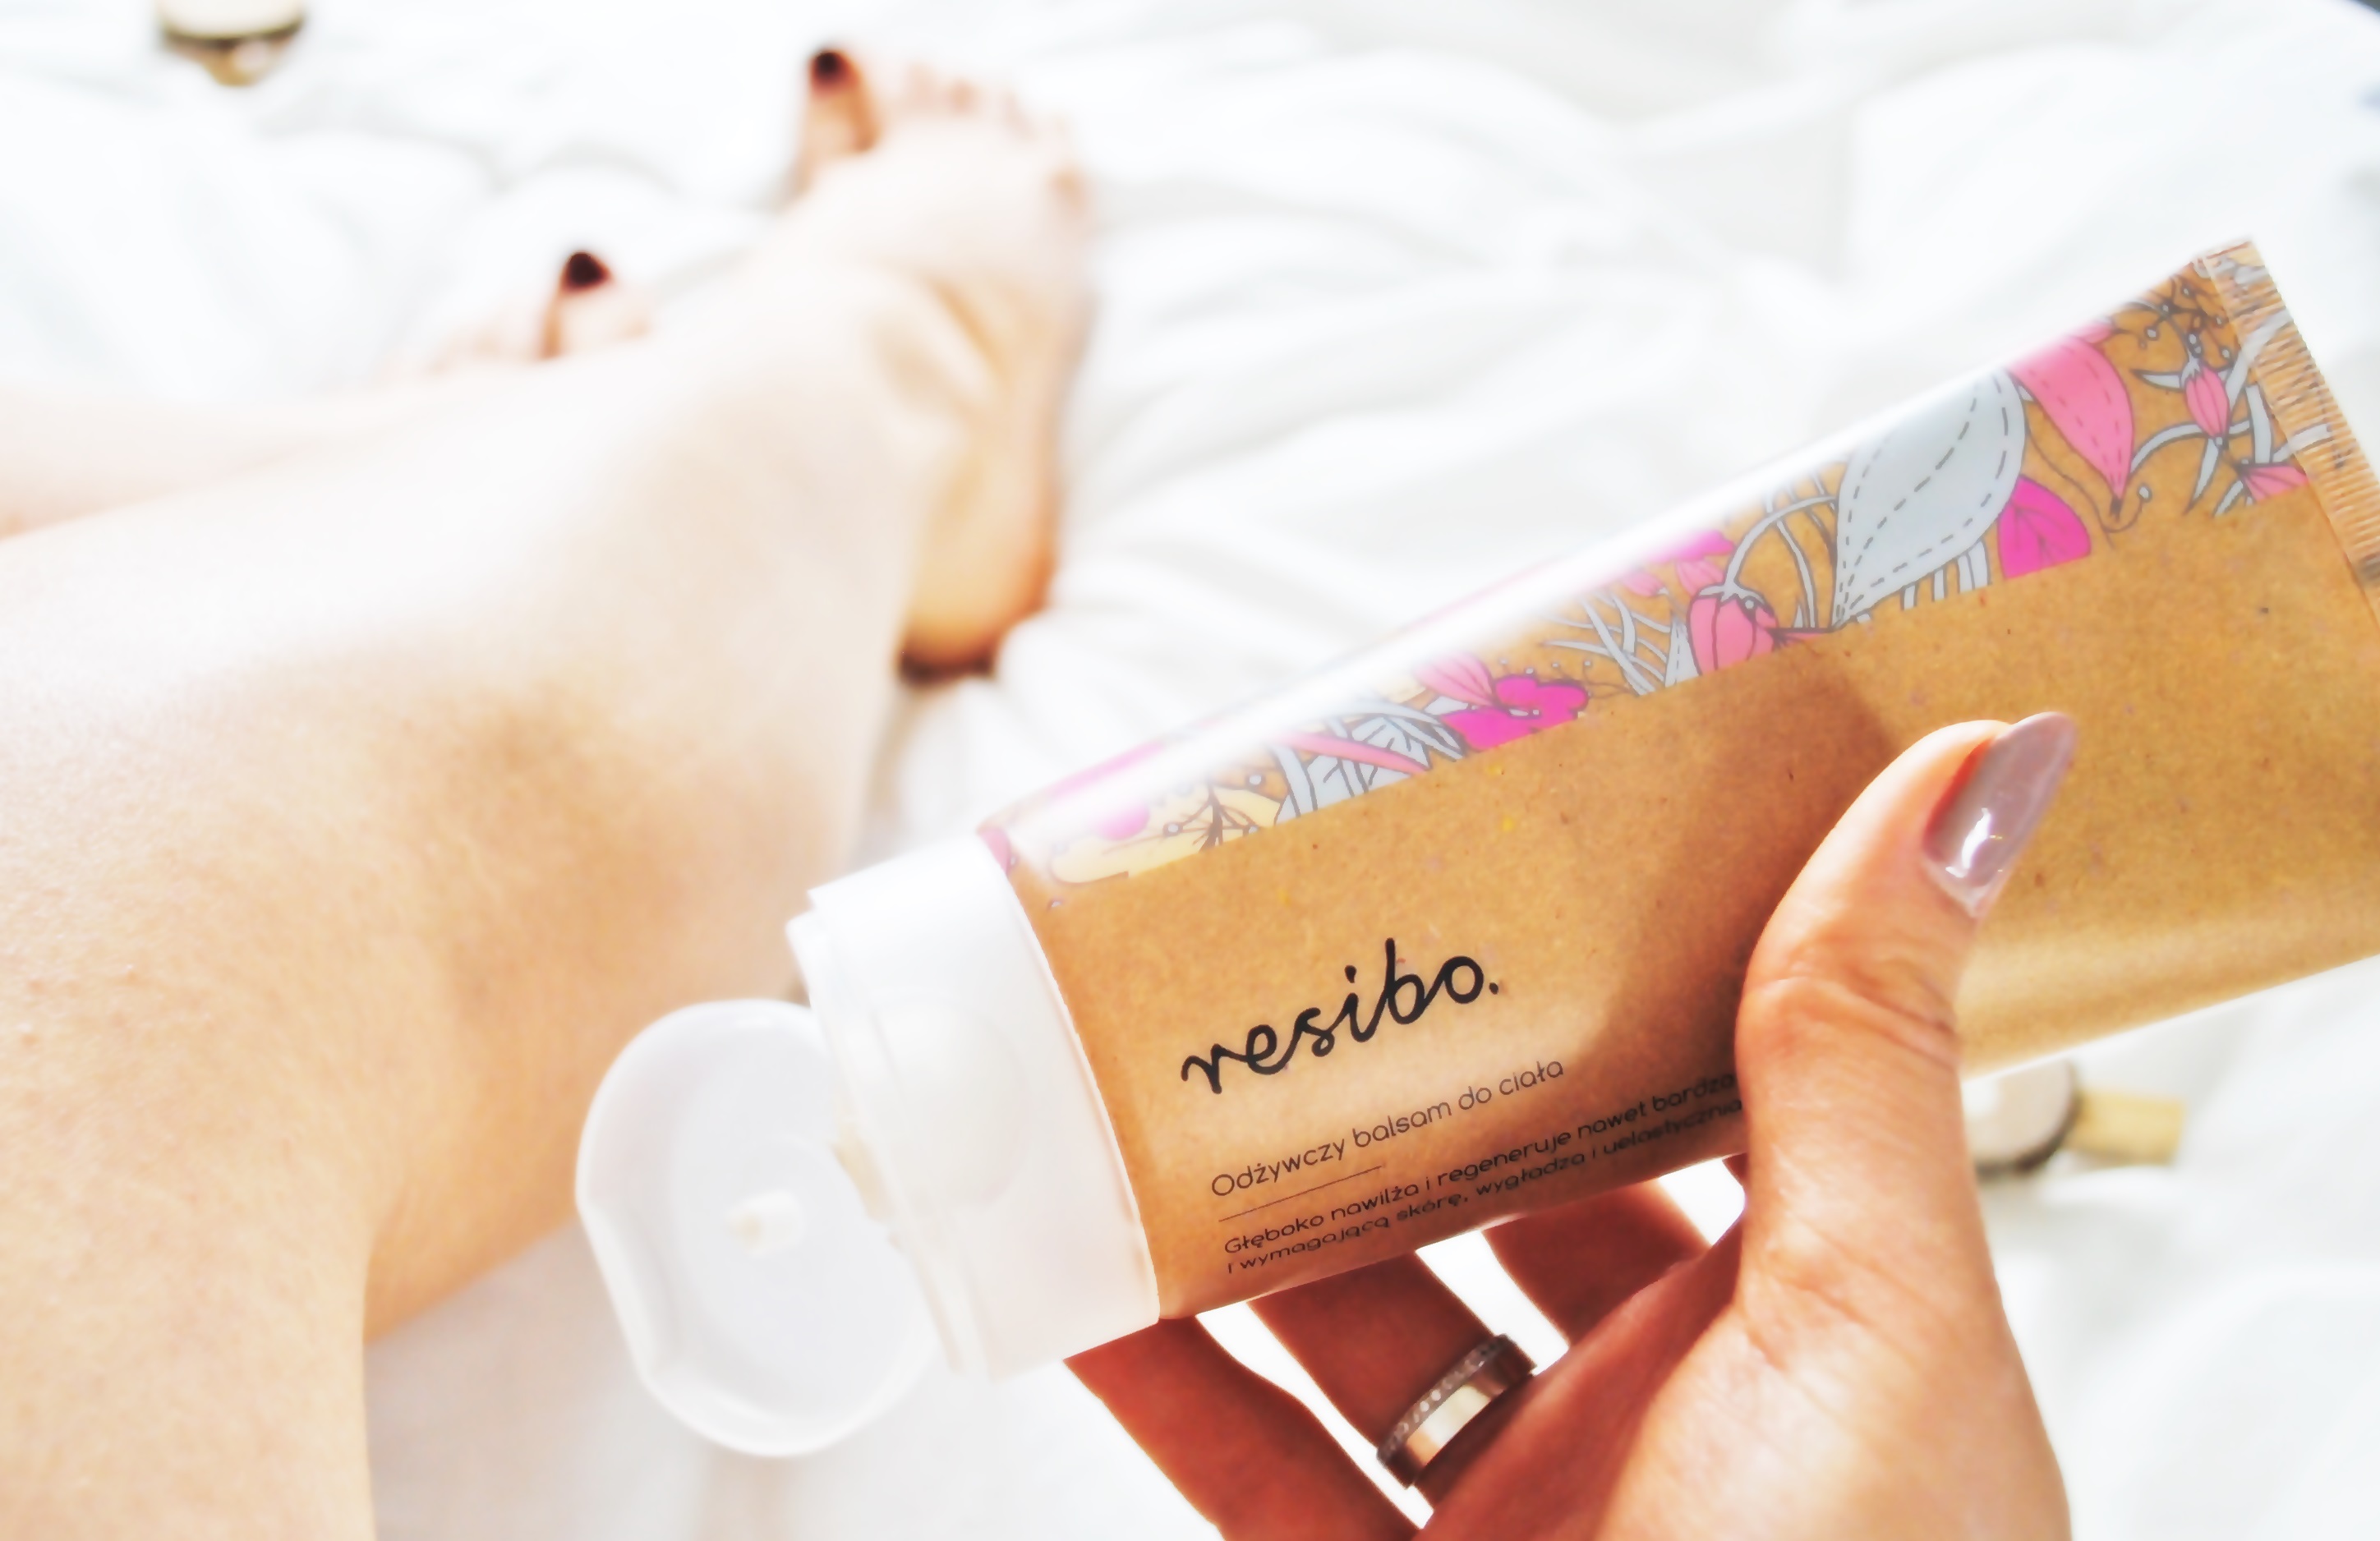 BeautypediaPatt | blog urodowy: Odżywczy balsam do ciała Resibo